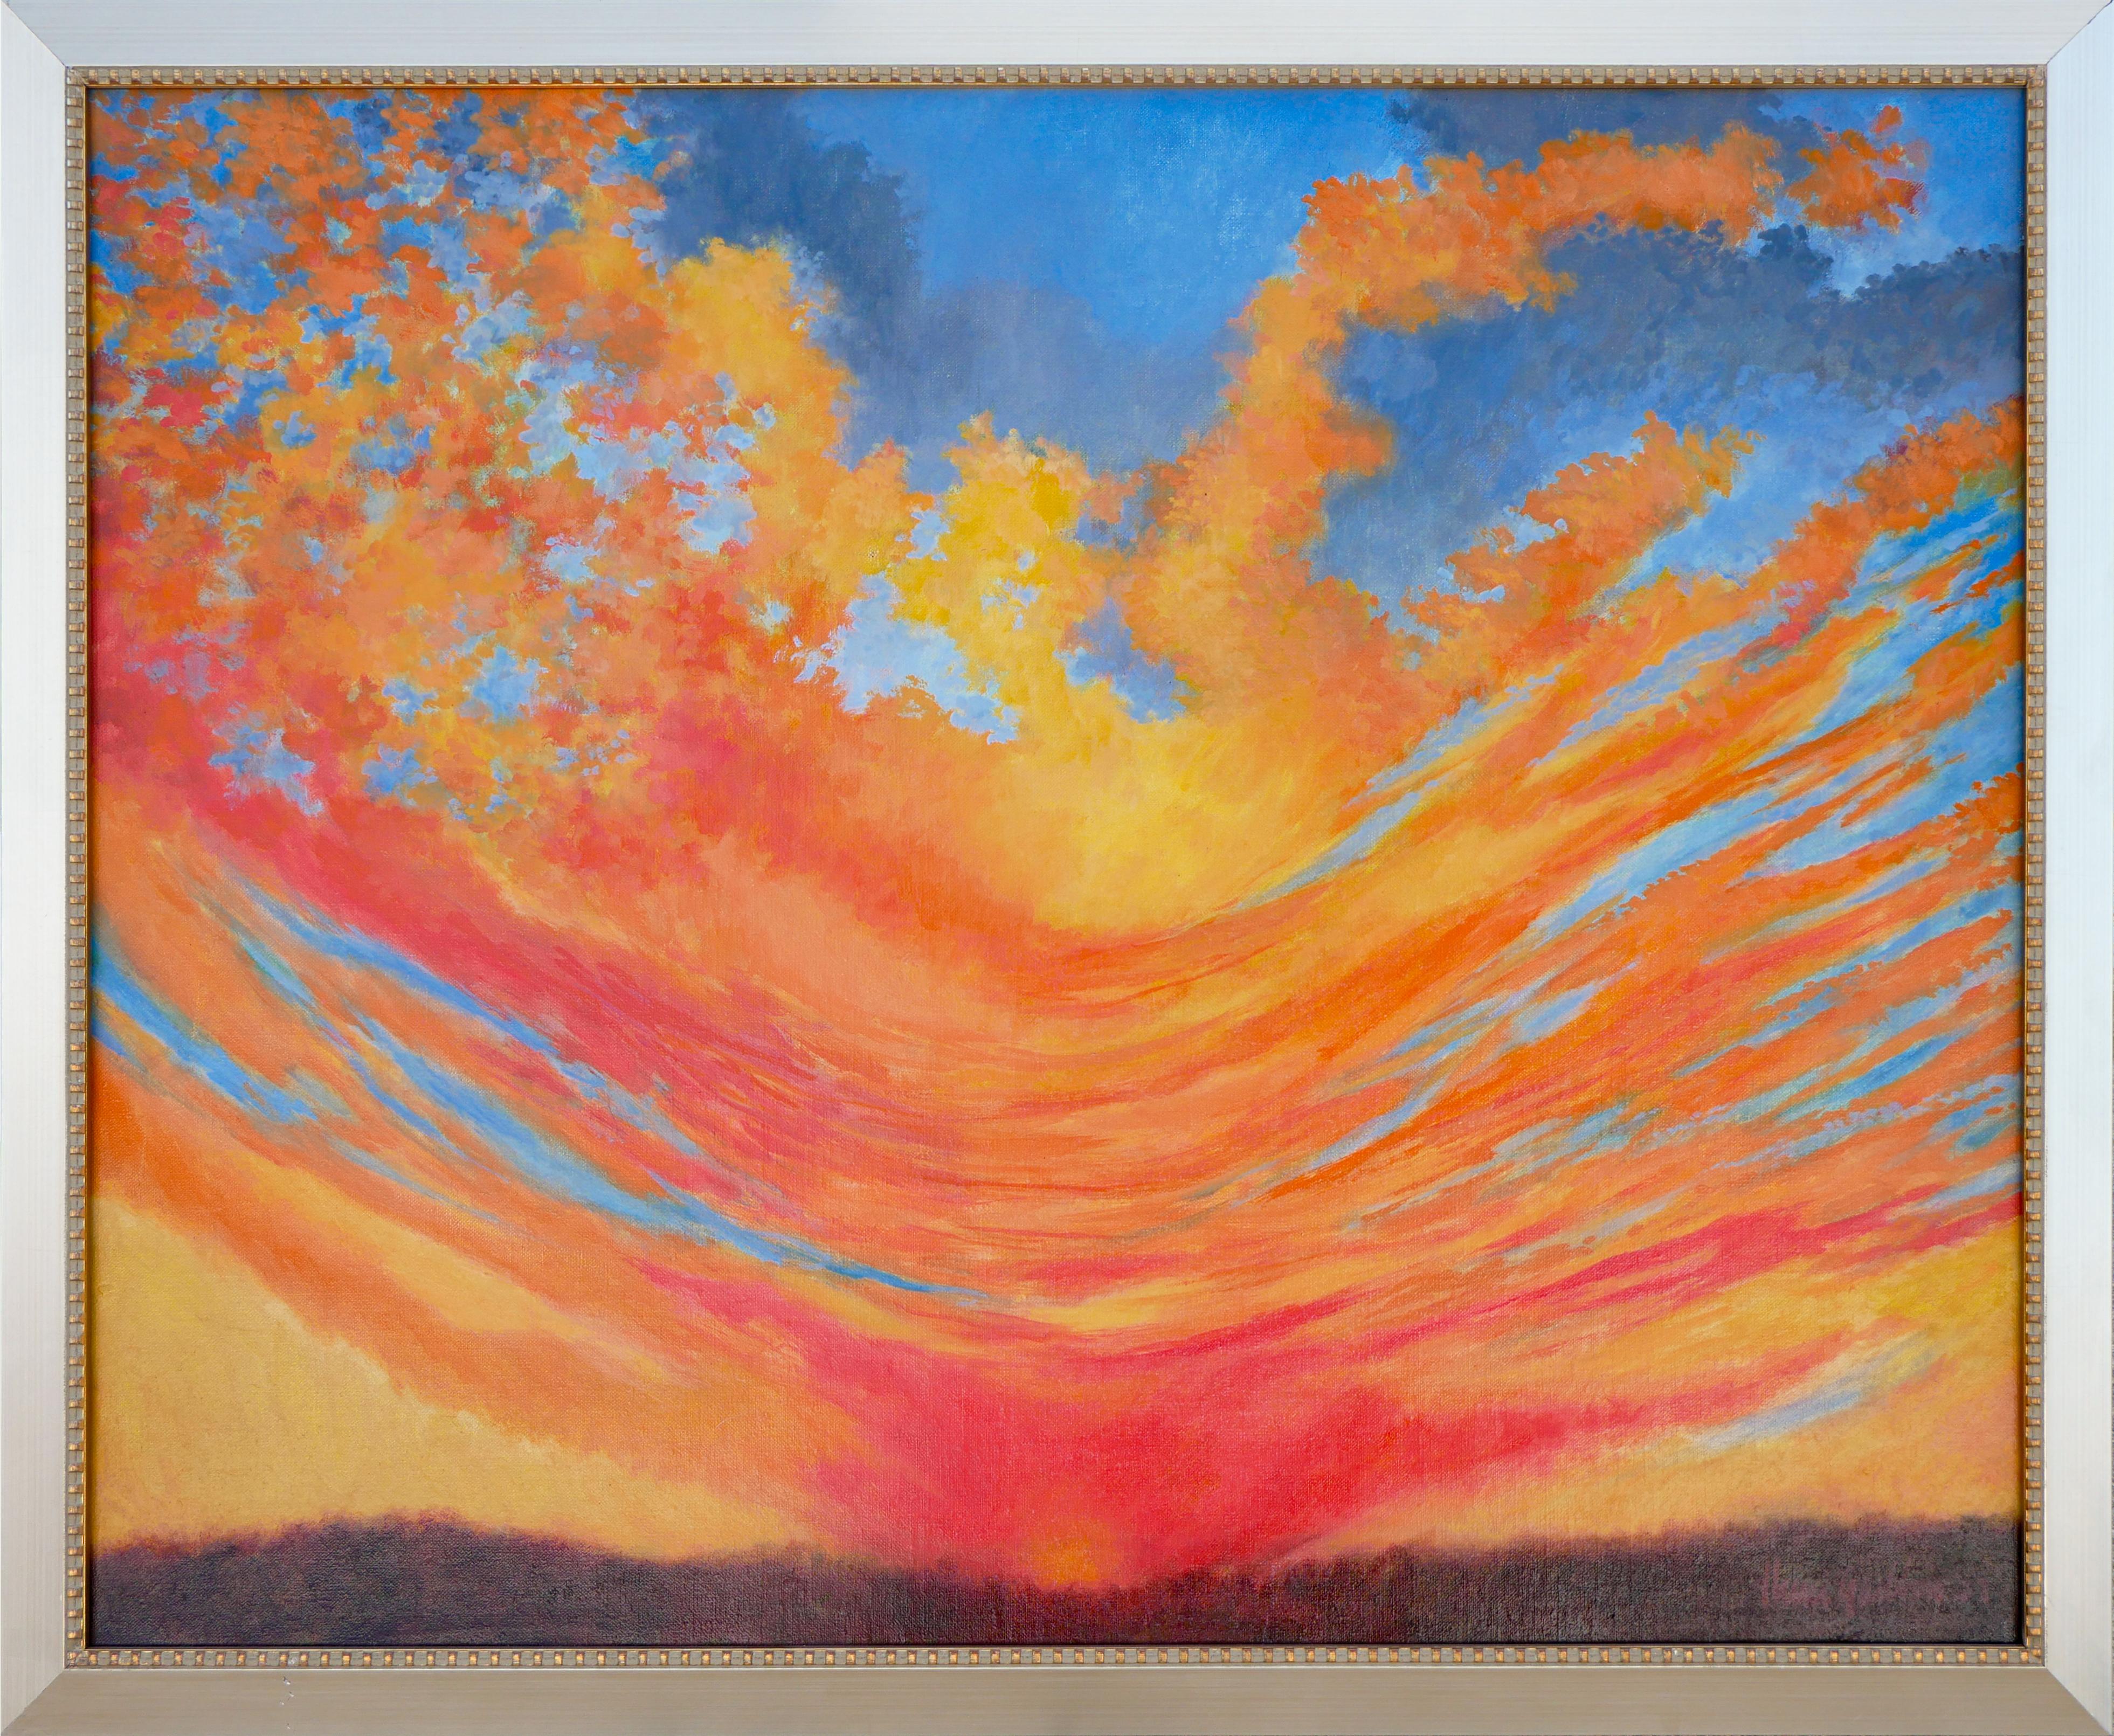 Paysage de coucher de soleil expressionniste abstrait bleu, orange et jaune